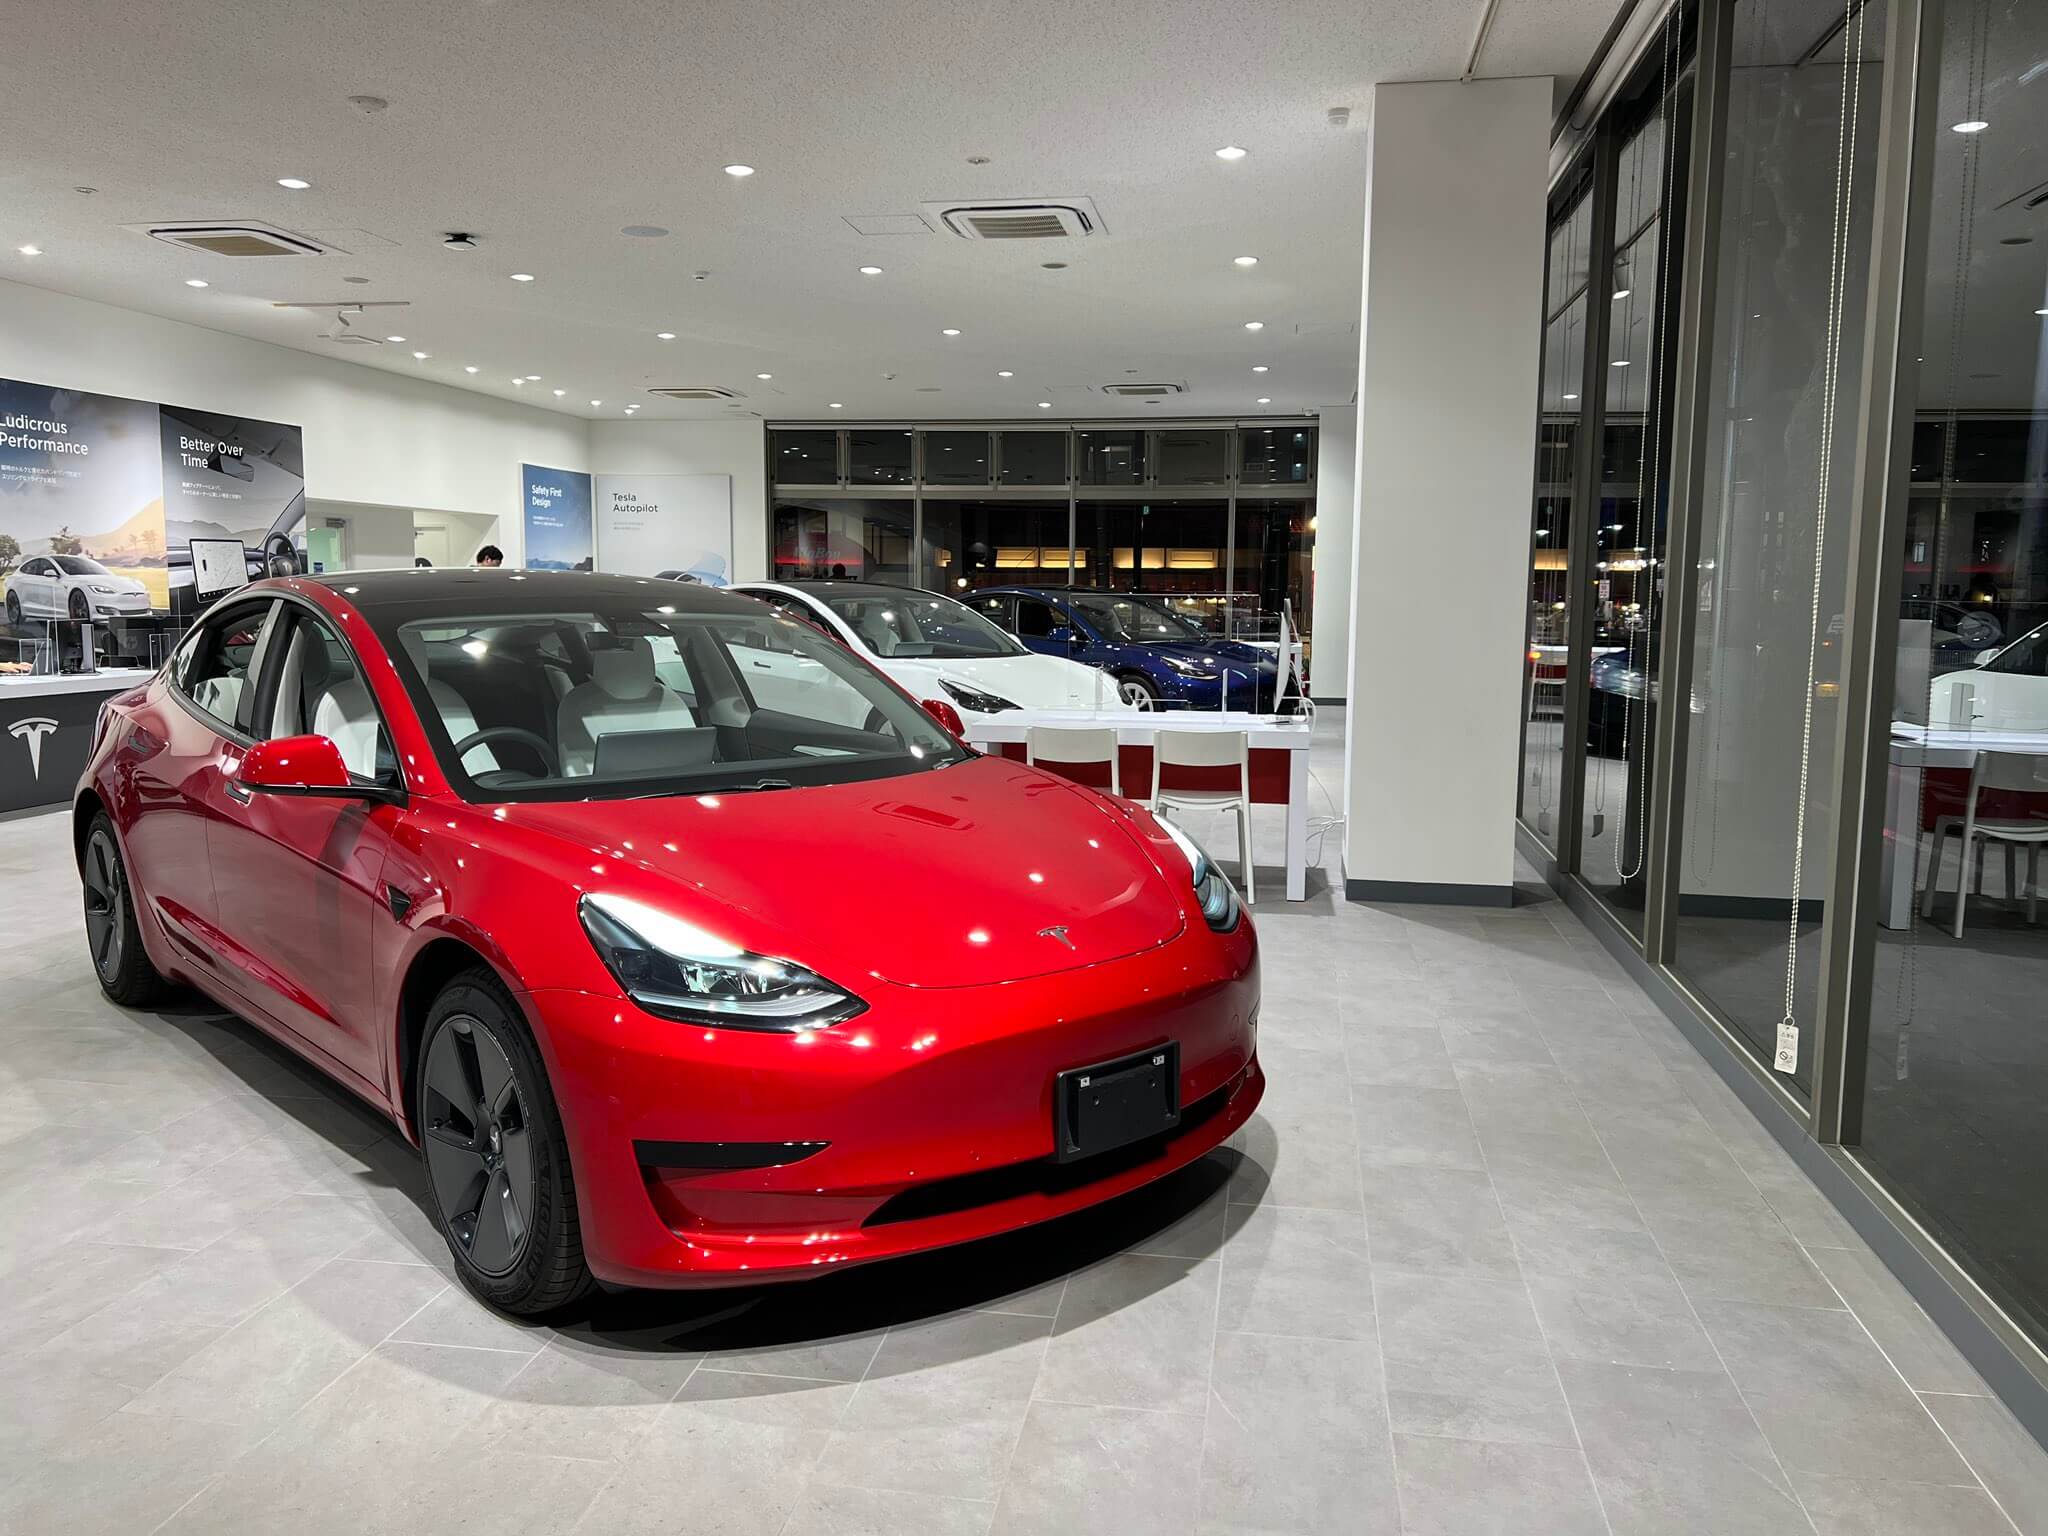 Gebruikte Tesla Model 3-auto’s worden verkocht voor $ 91.000 in Australië